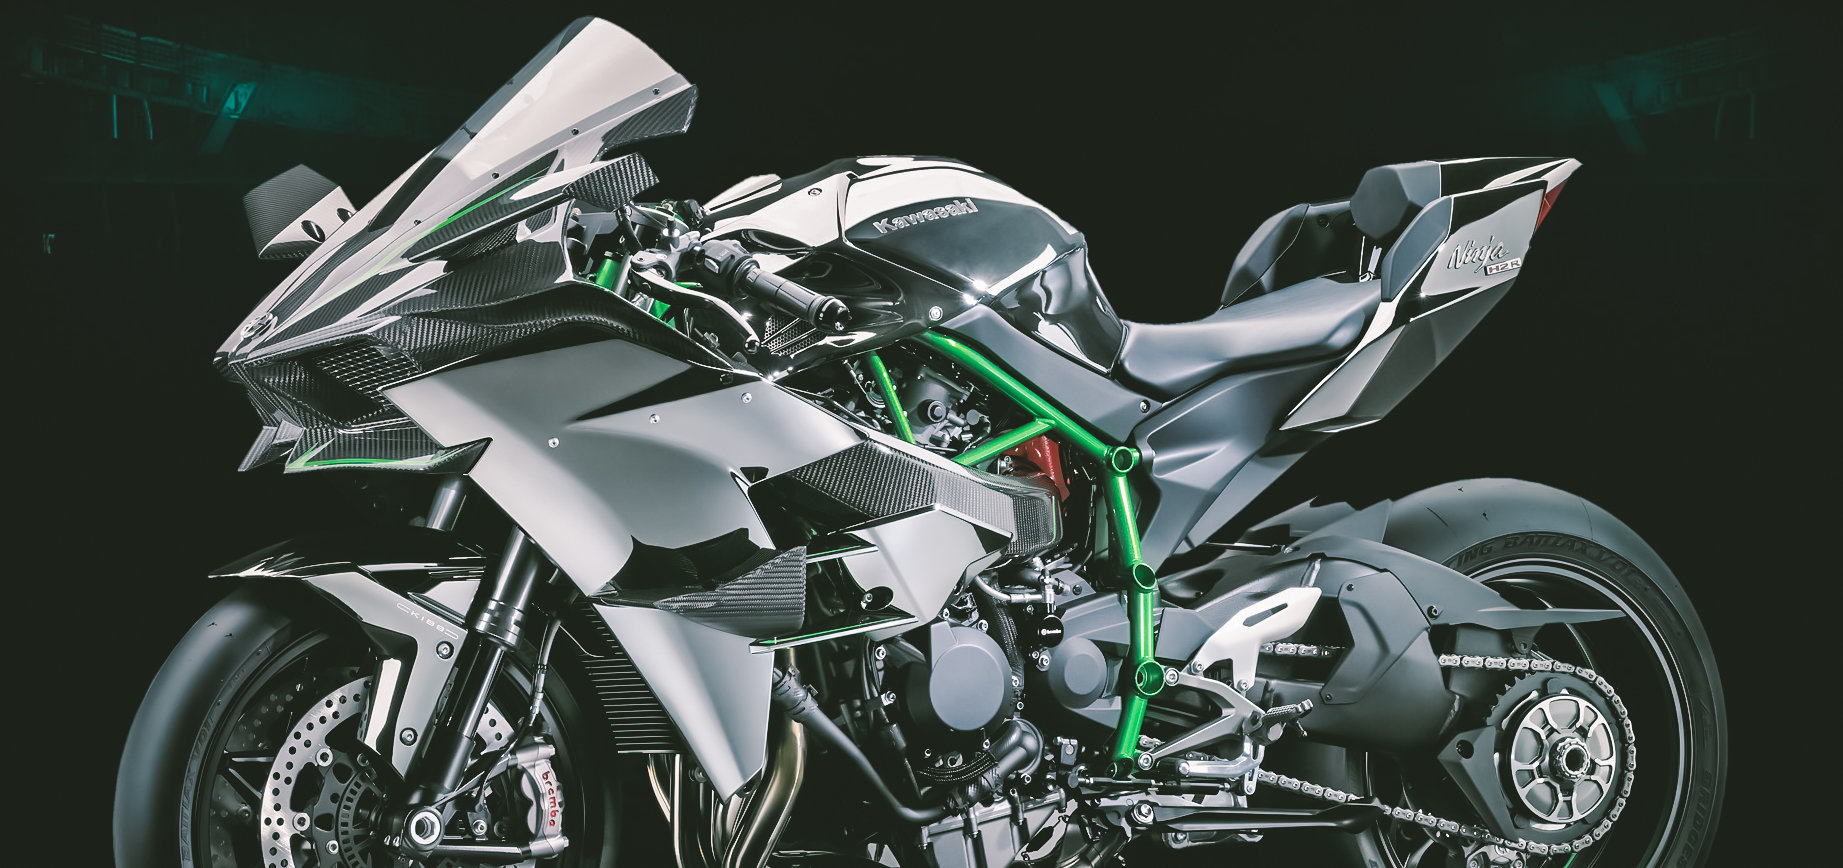 Kawasaki Ninja H2r Supercharged Hp And Wings The